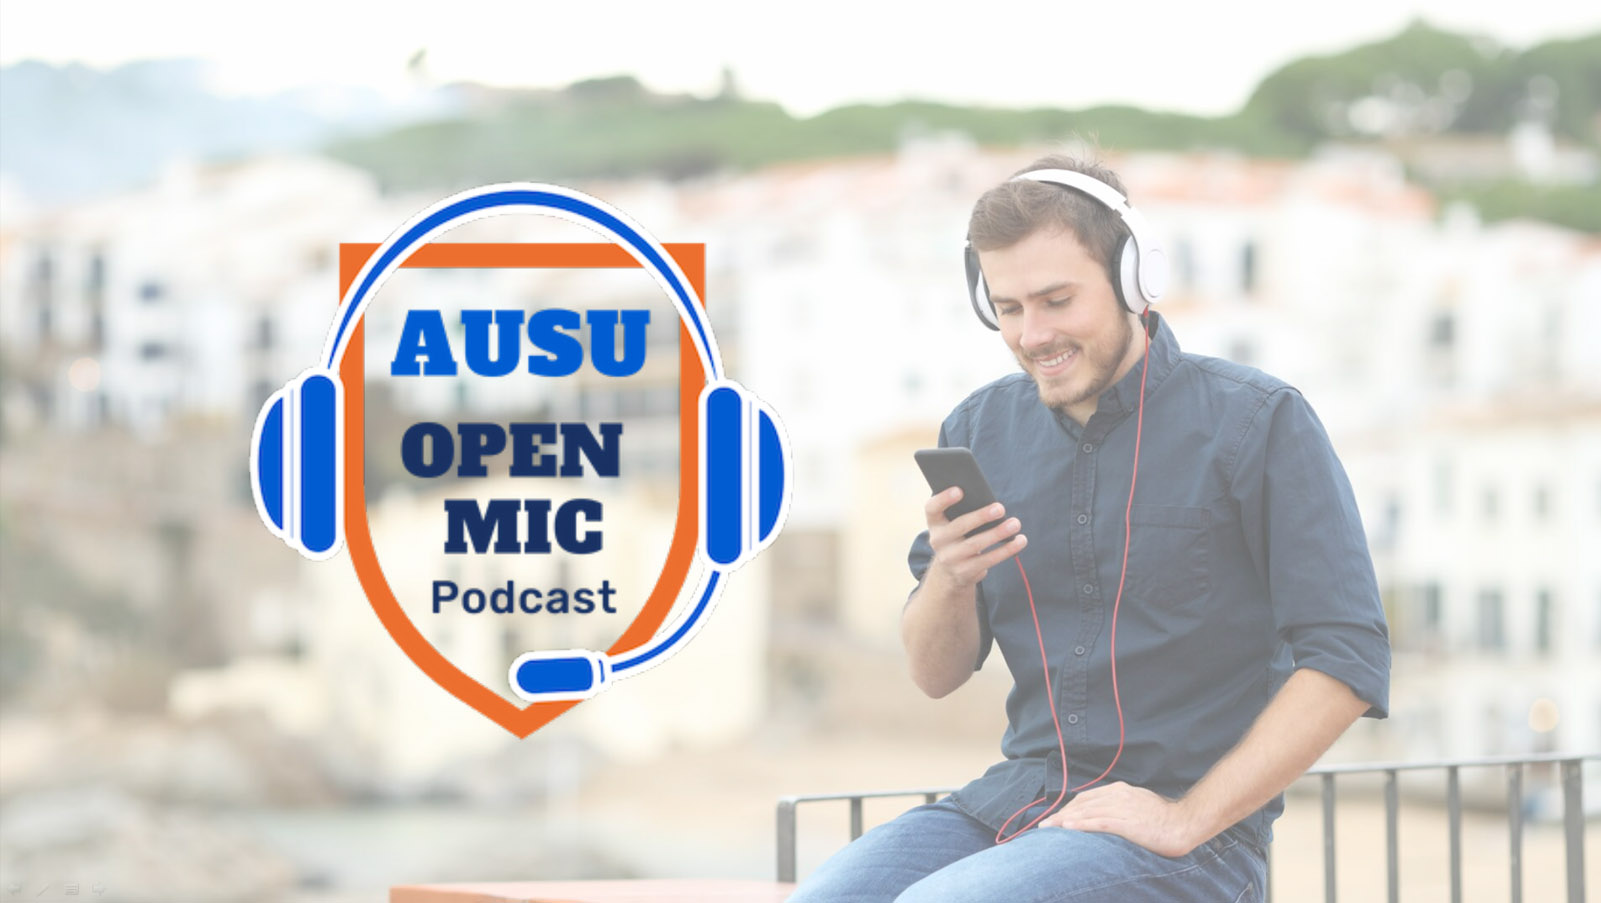 AUSU Open Mic Podcast